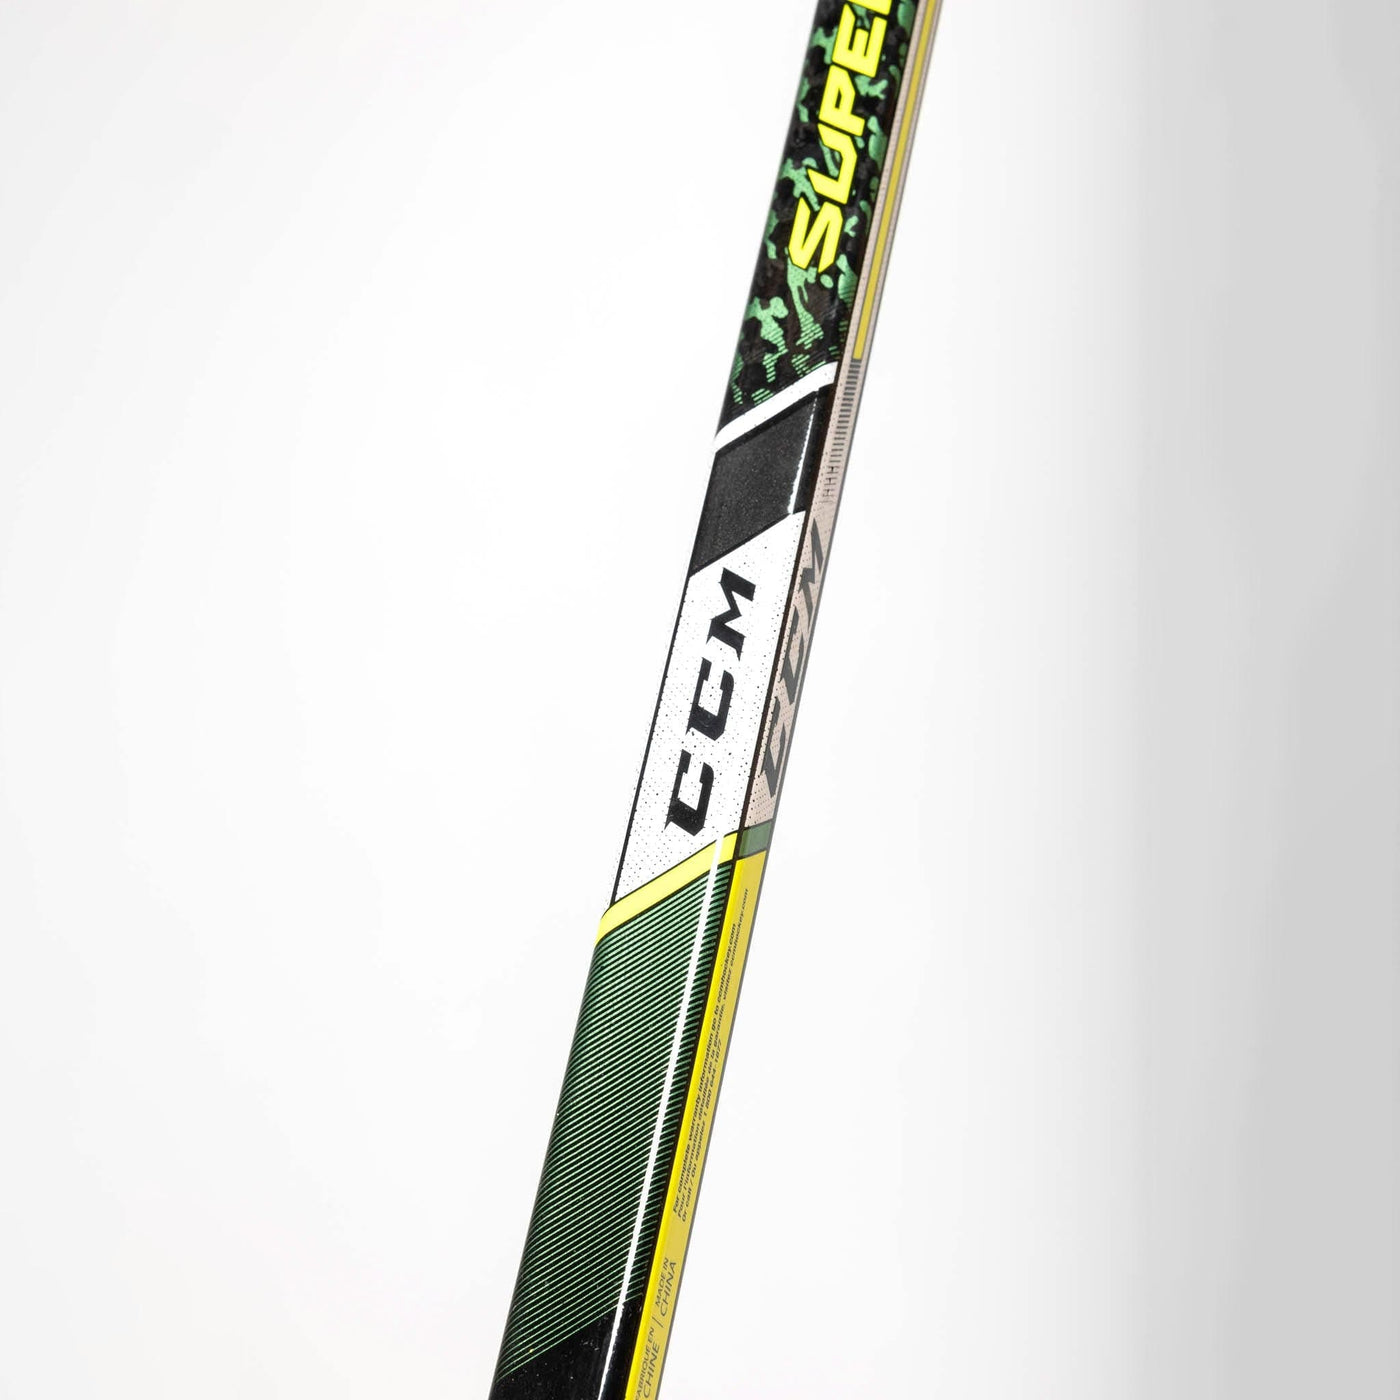 CCM Super Tacks 9380 Junior Hockey Stick